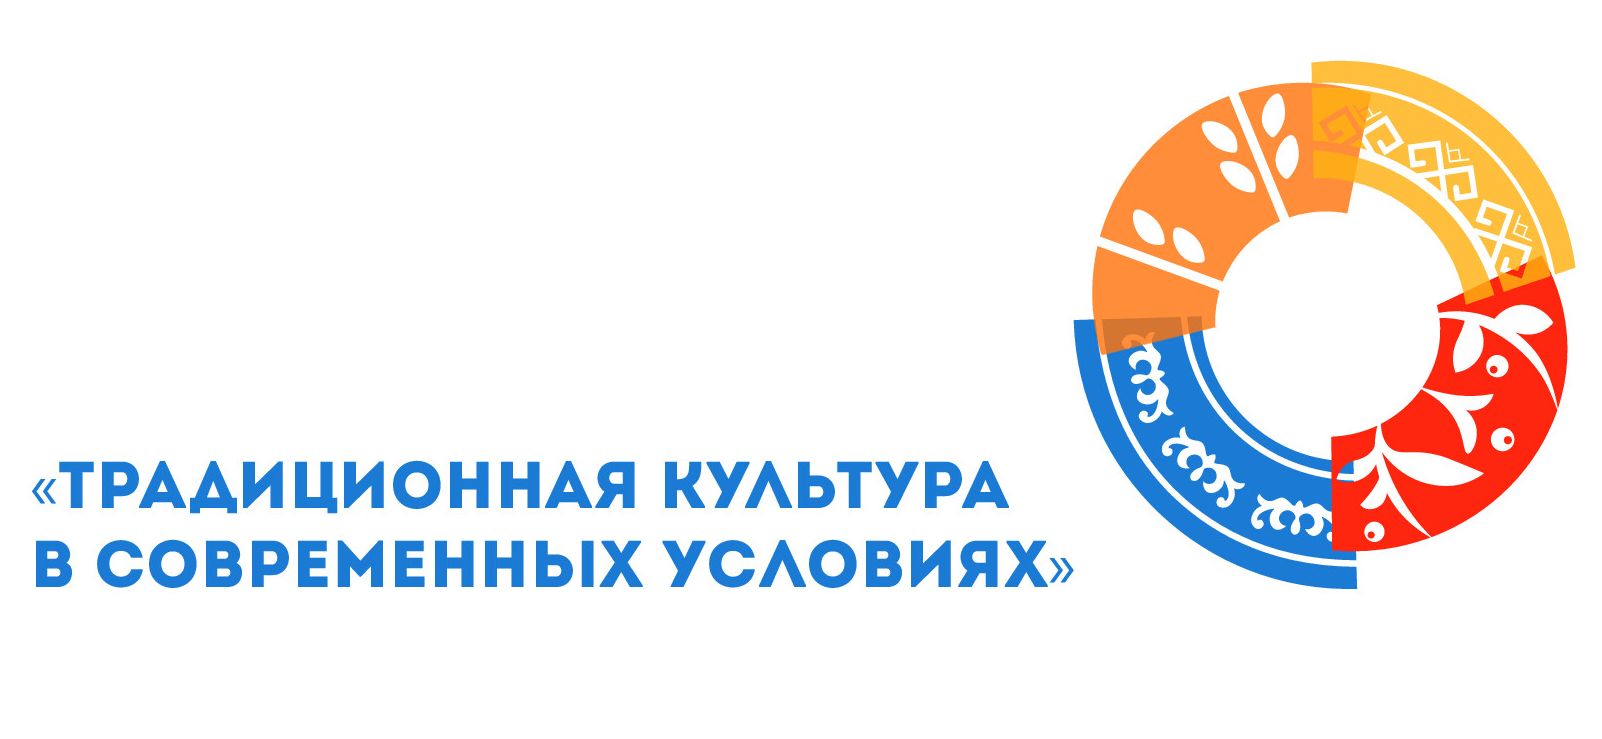 7 ноября в г. Барнауле начал работу первый Съезд работников культурно-досуговых учреждений Алтайского края